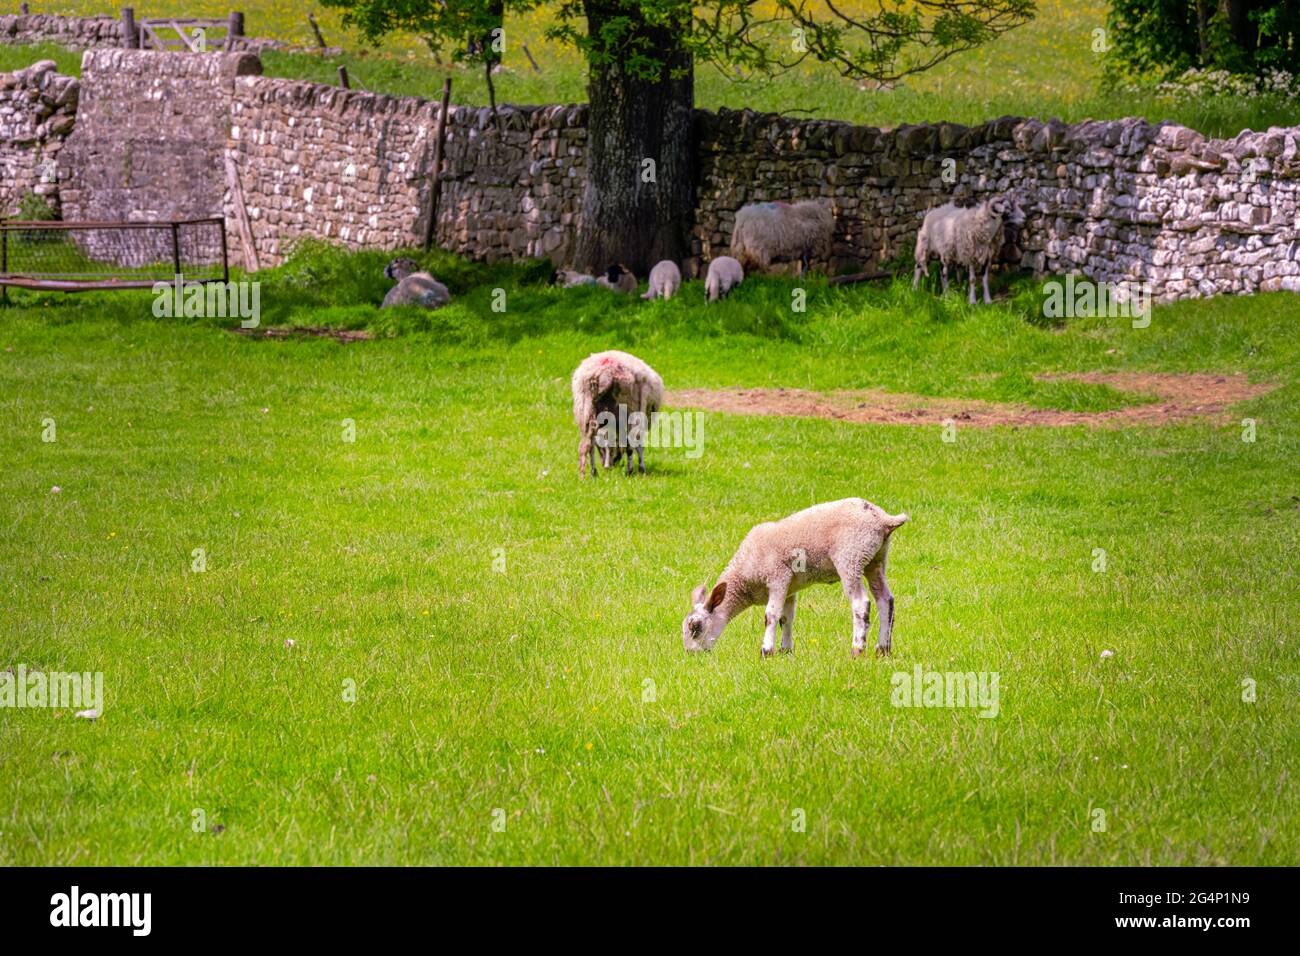 Agneau aux oreilles longues et piquées dans un champ, comté de Durham, Angleterre Banque D'Images